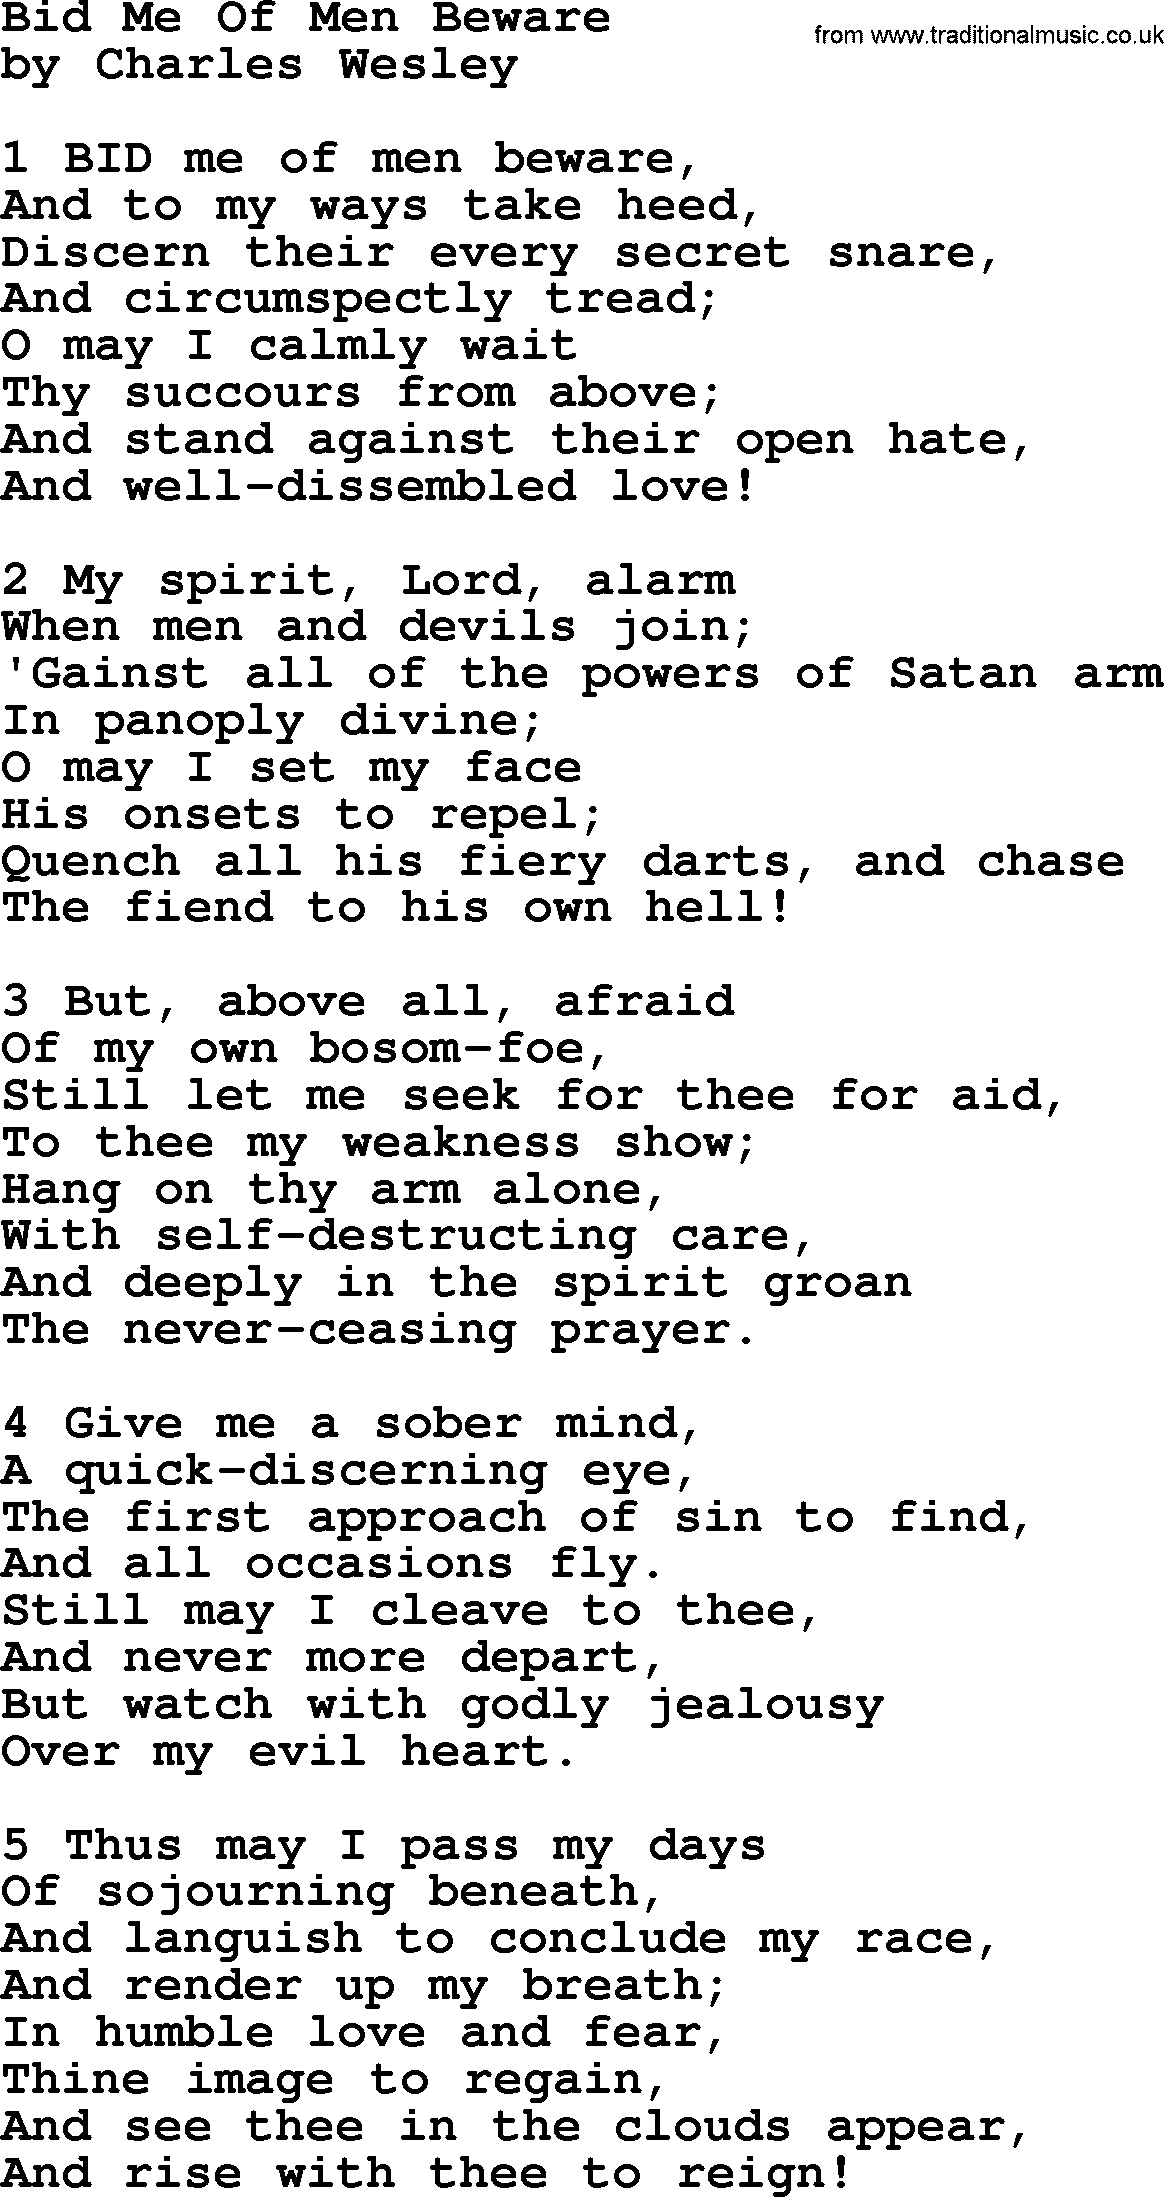 Bid Me Of Men Beware by Charles Wesley - hymn lyrics